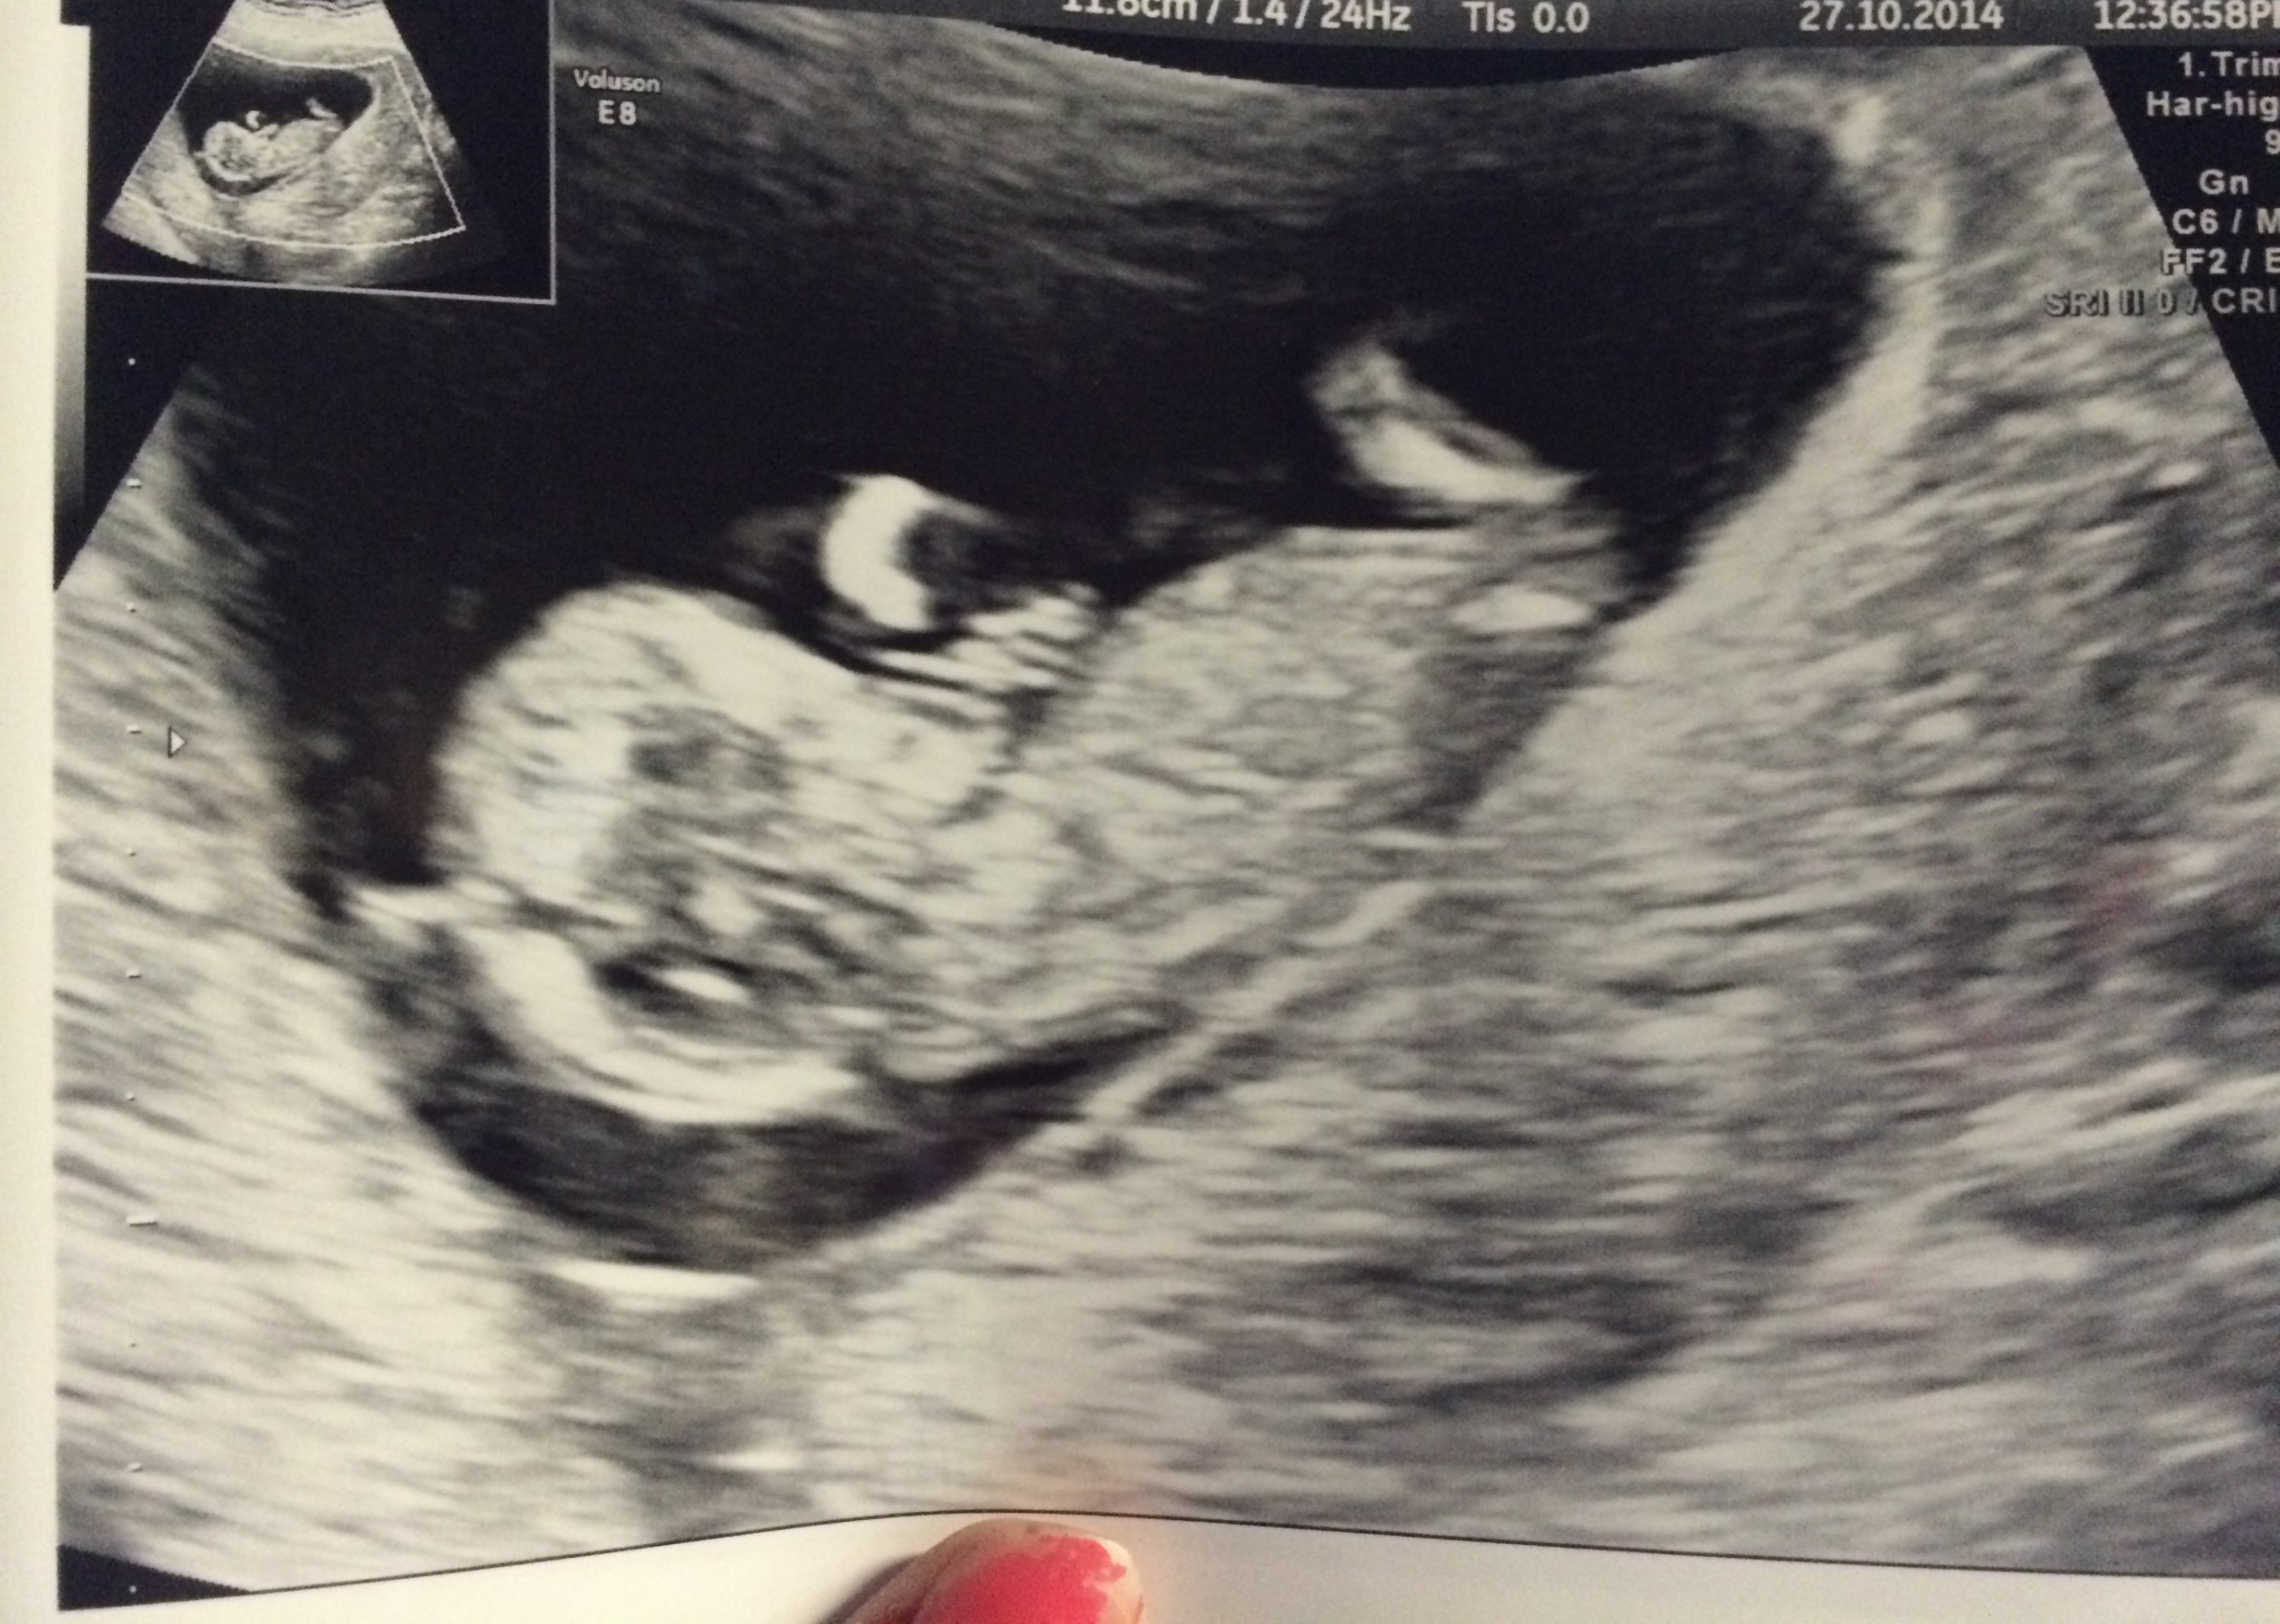 Klassisk ultralydsbillede af ufødt barn